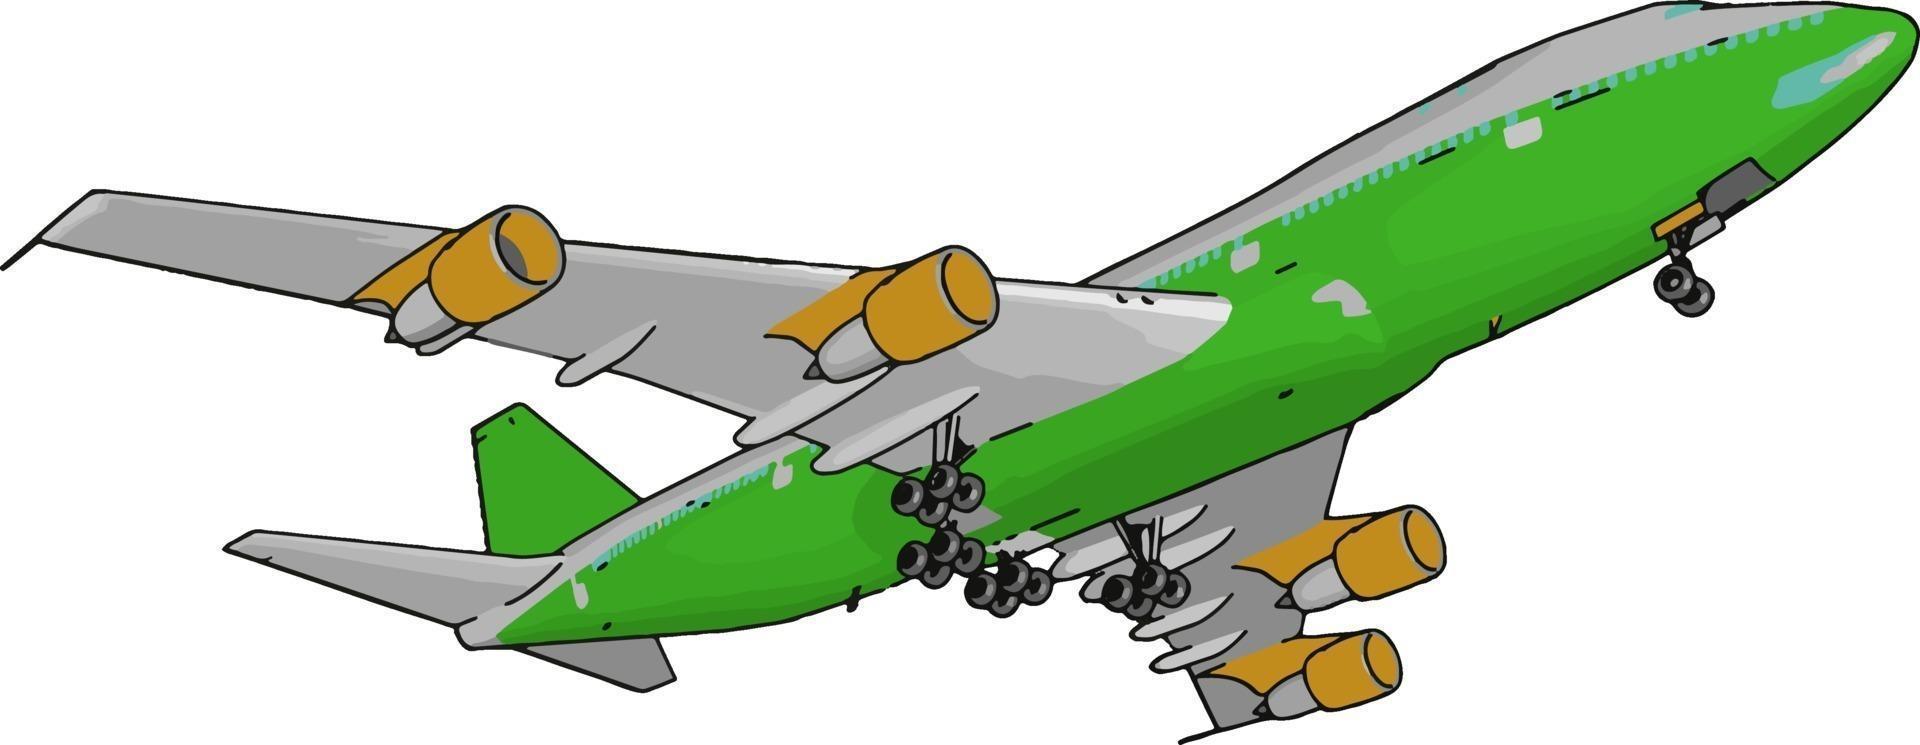 Avión de pasajeros verde, ilustración, vector sobre fondo blanco.